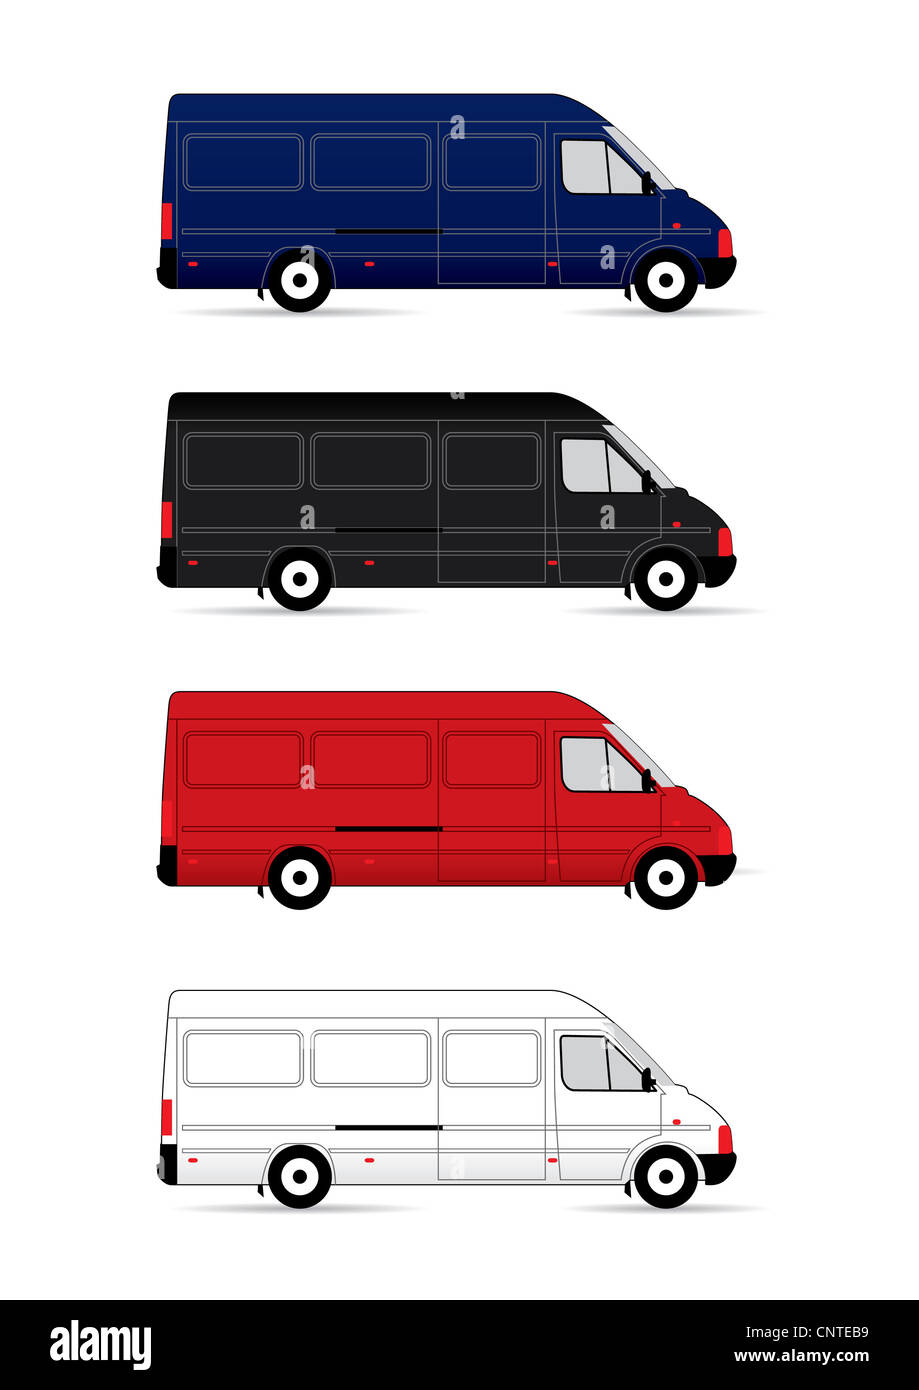 Les camionnettes de livraison isolé sur fond blanc. illustration Banque D'Images